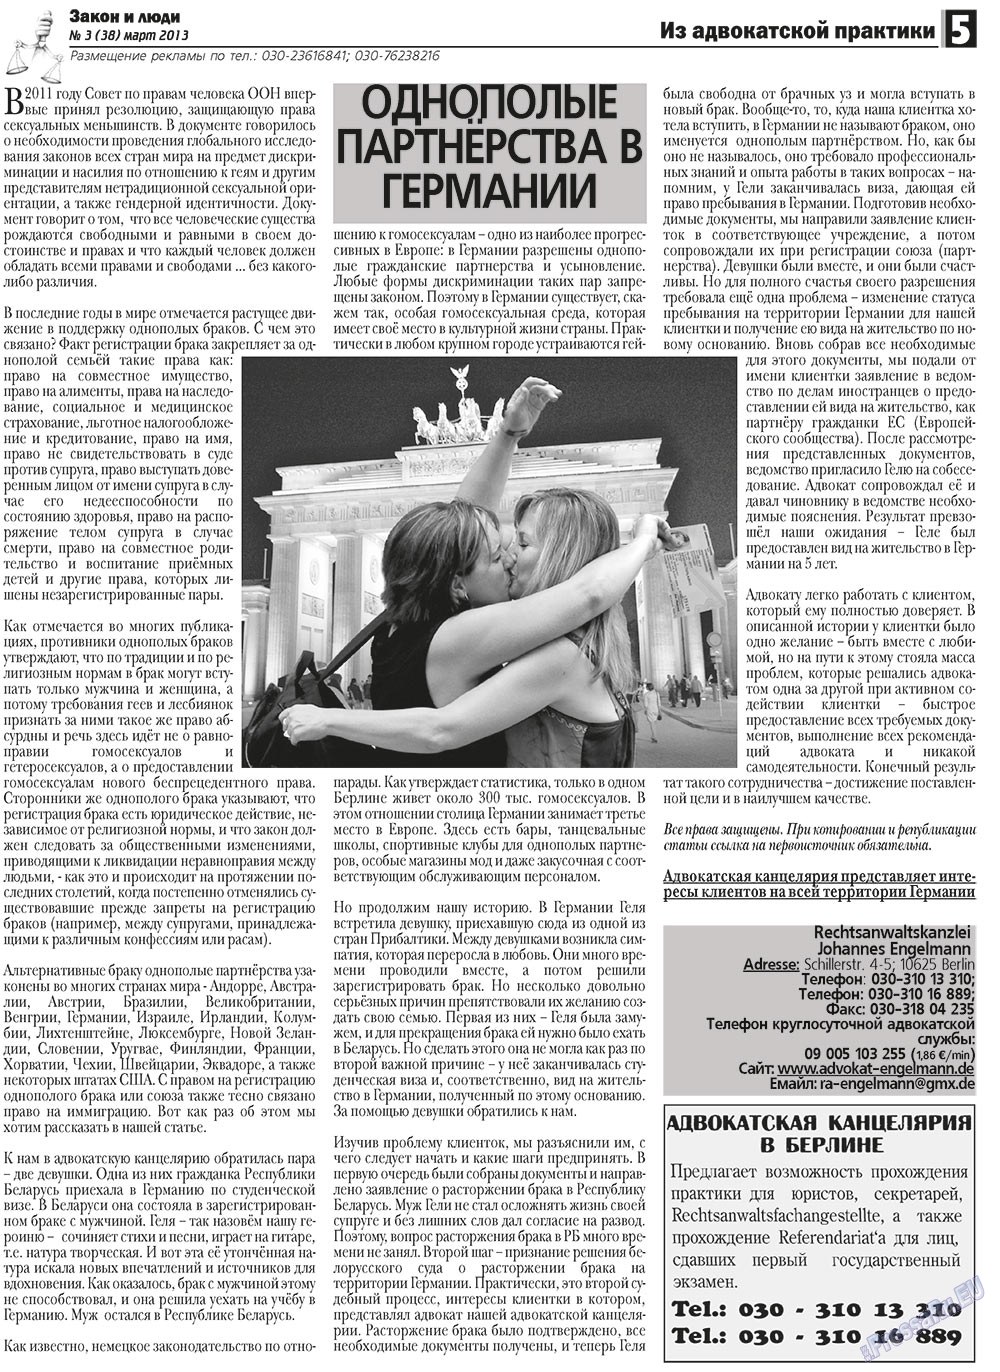 Закон и люди, газета. 2013 №3 стр.5